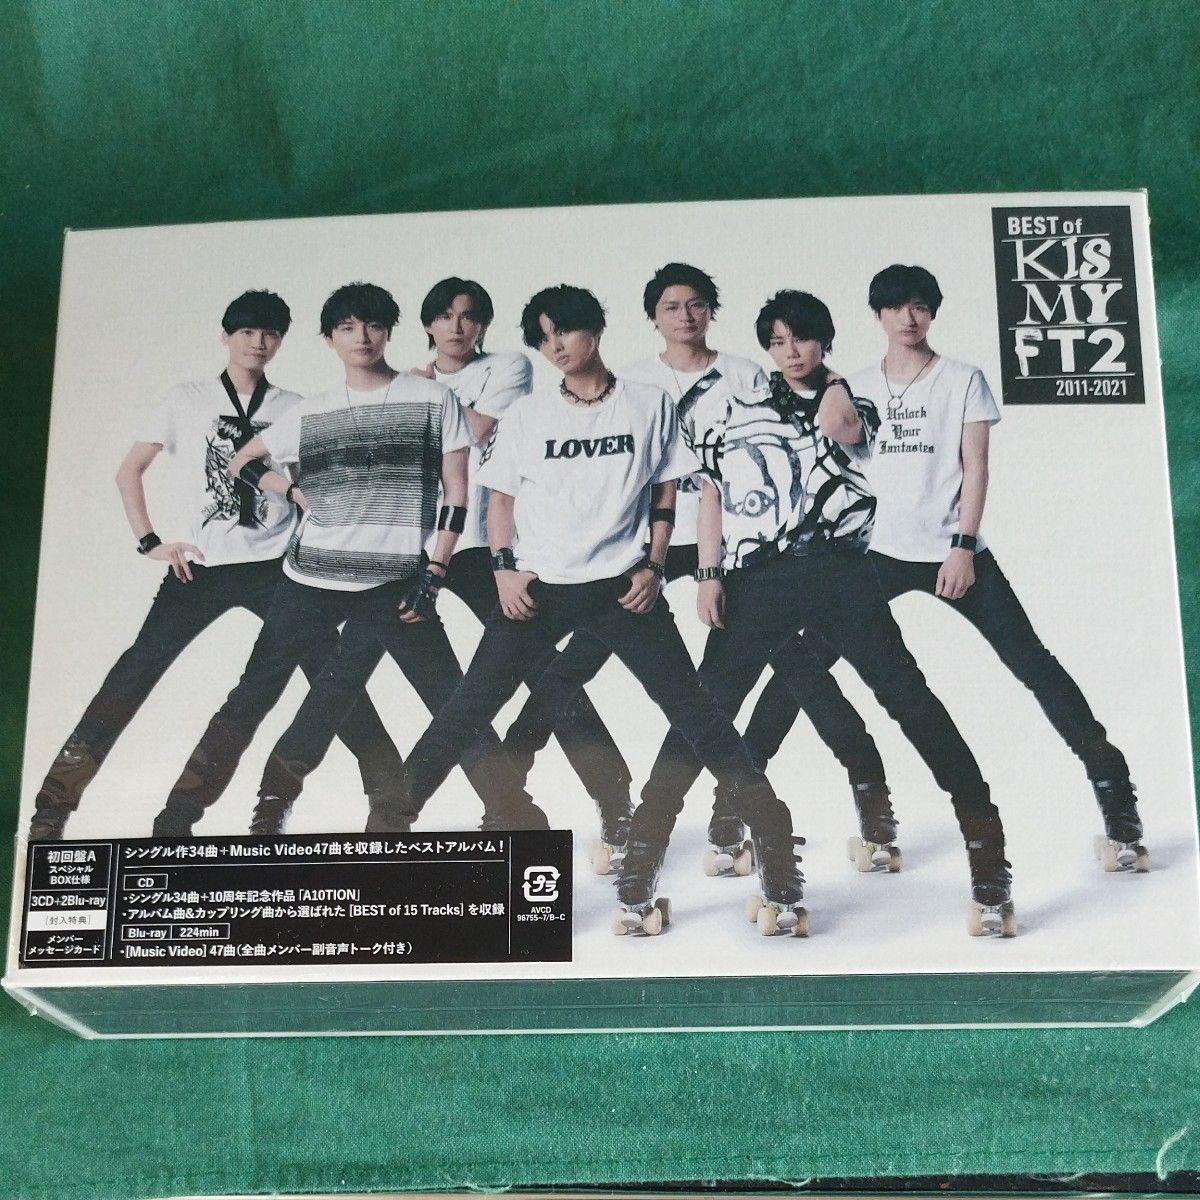  BEST of Kis-My-Ft2 (CD3枚組+Blu-ray2枚組) (初回盤A)スペシャルBOX仕様